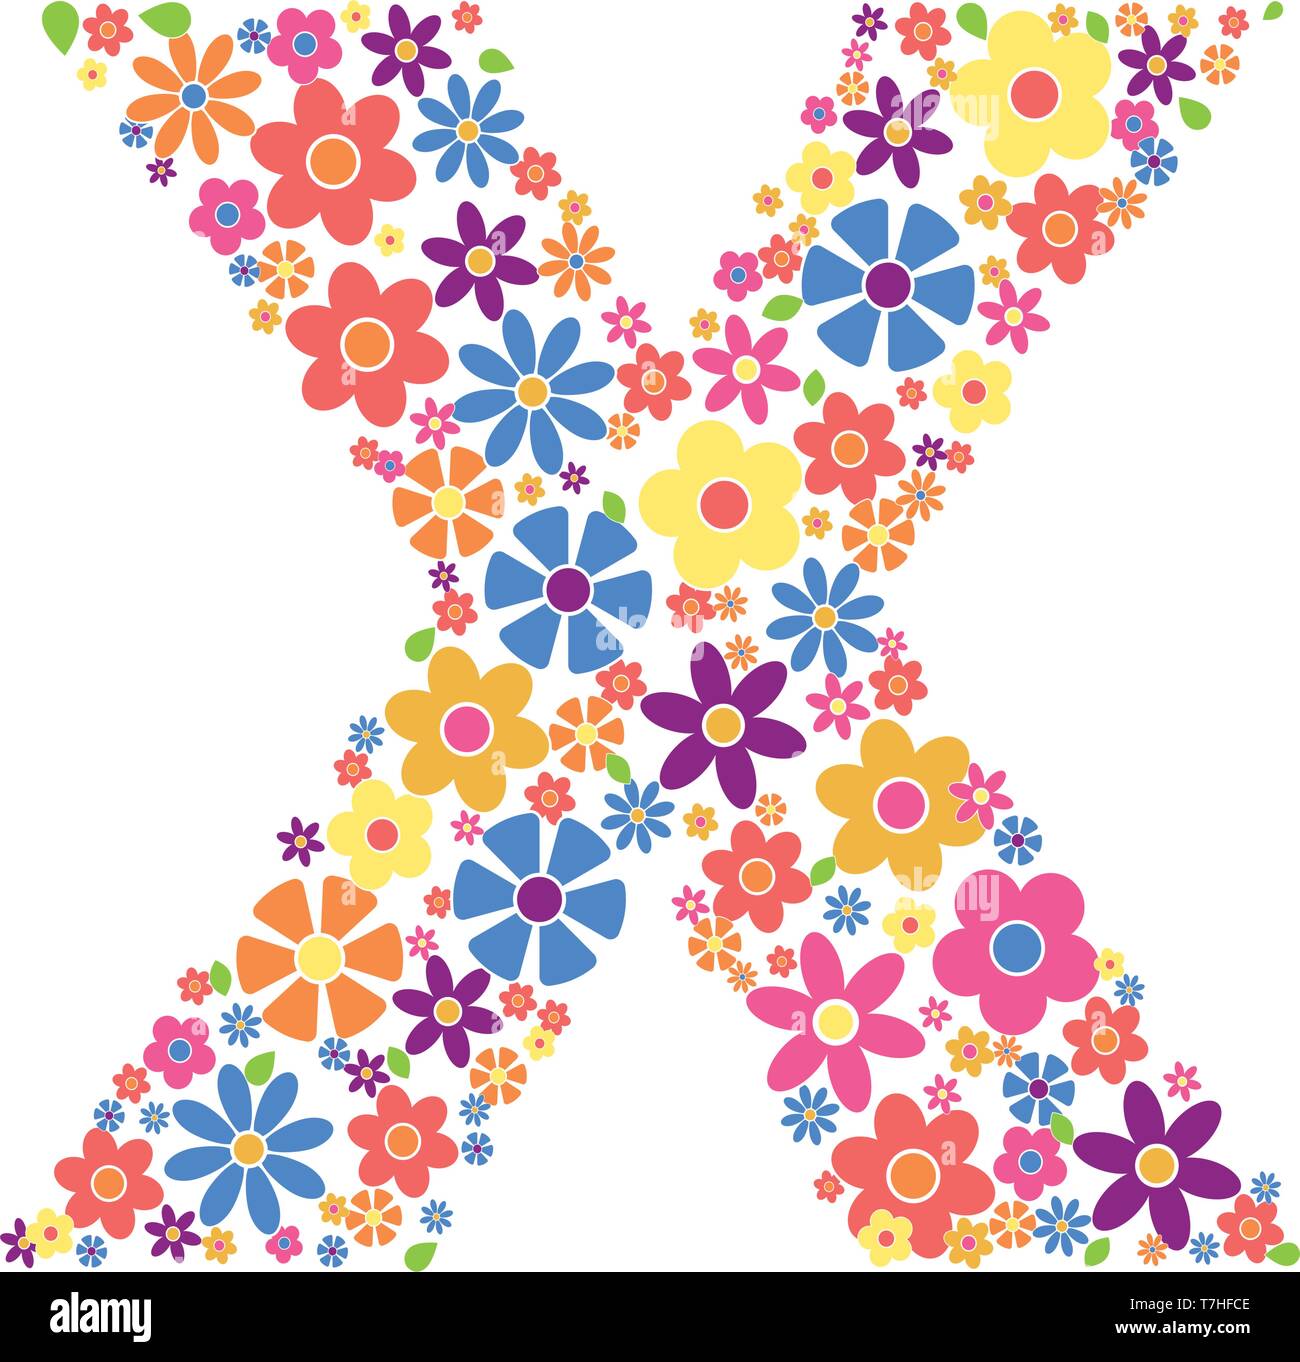 Buchstabe X gefüllt mit einer Vielzahl von bunten Blumen auf weißem Hintergrund Vektor-illustration isoliert Stock Vektor